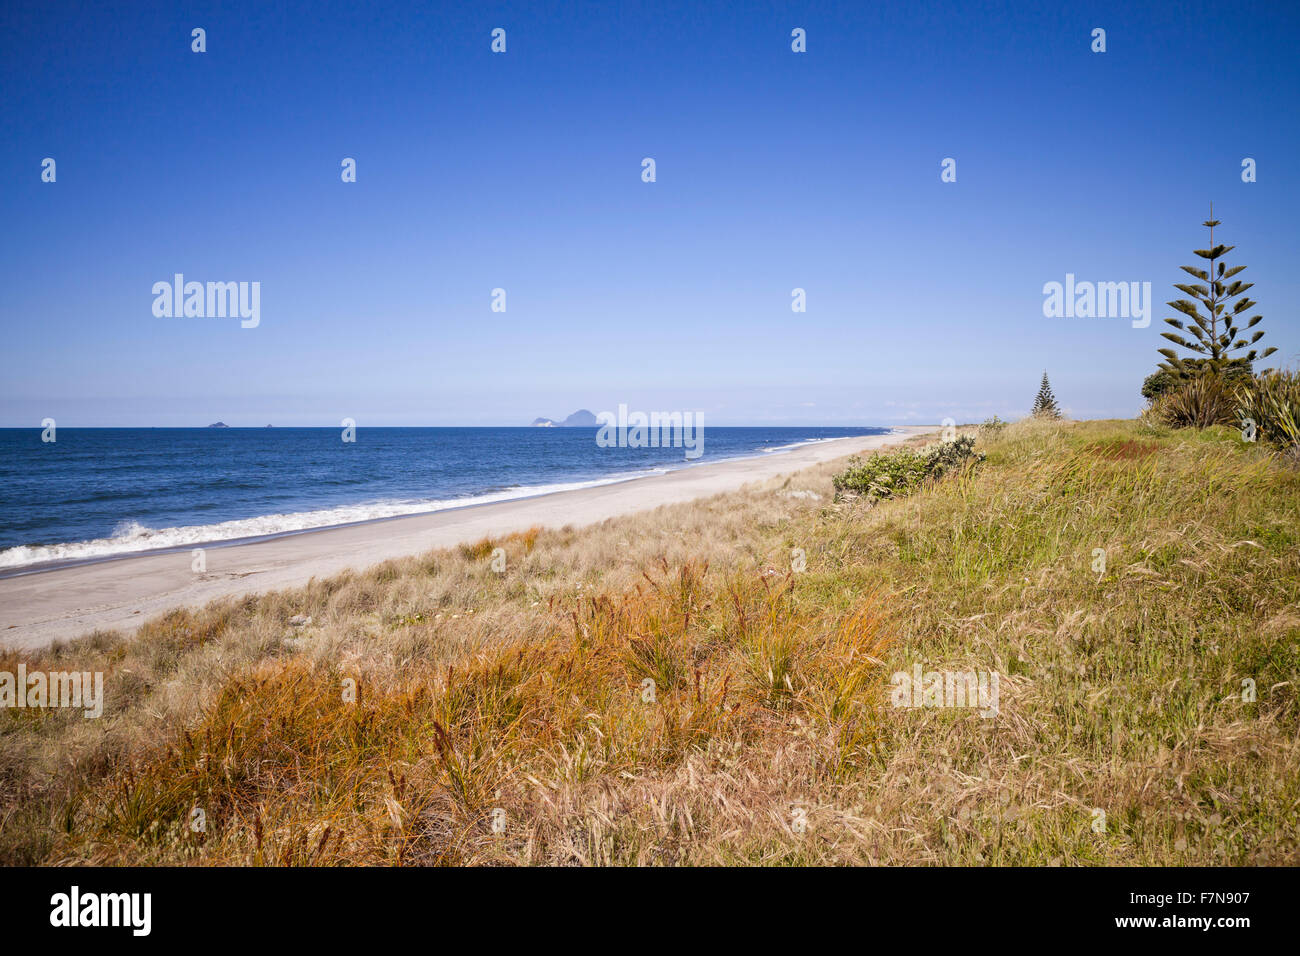 Spiaggia di sabbia bianca, Papamoa, Baia di Planty, Nuova Zelanda Foto Stock